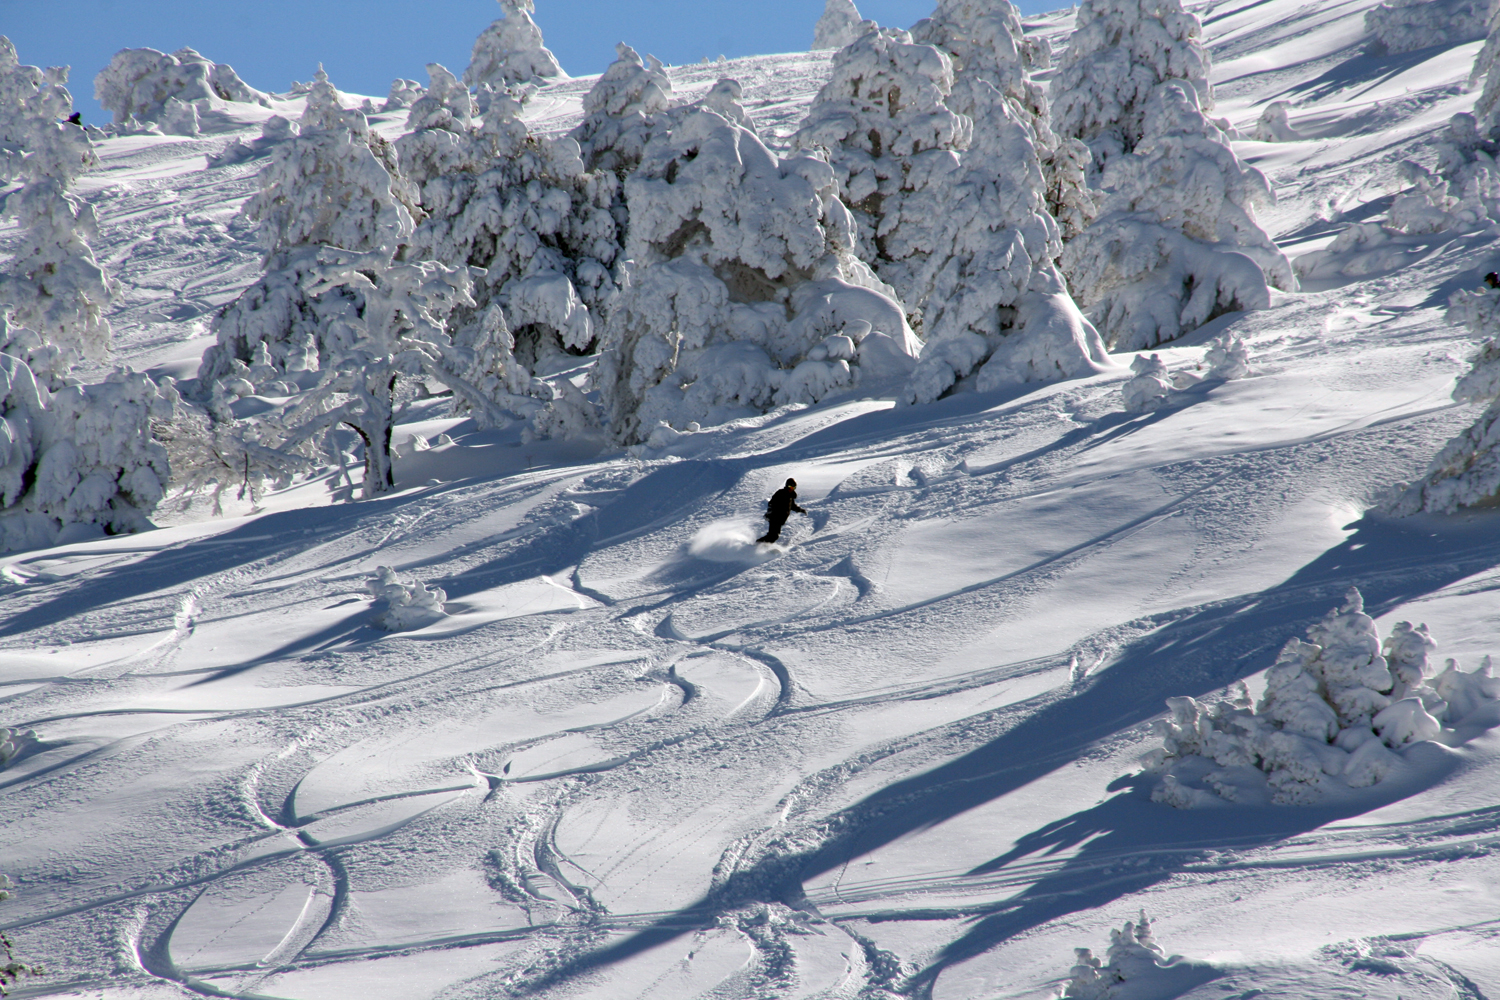 Javalambre 02 03 2013 snowboarder disfrutando de la nieve